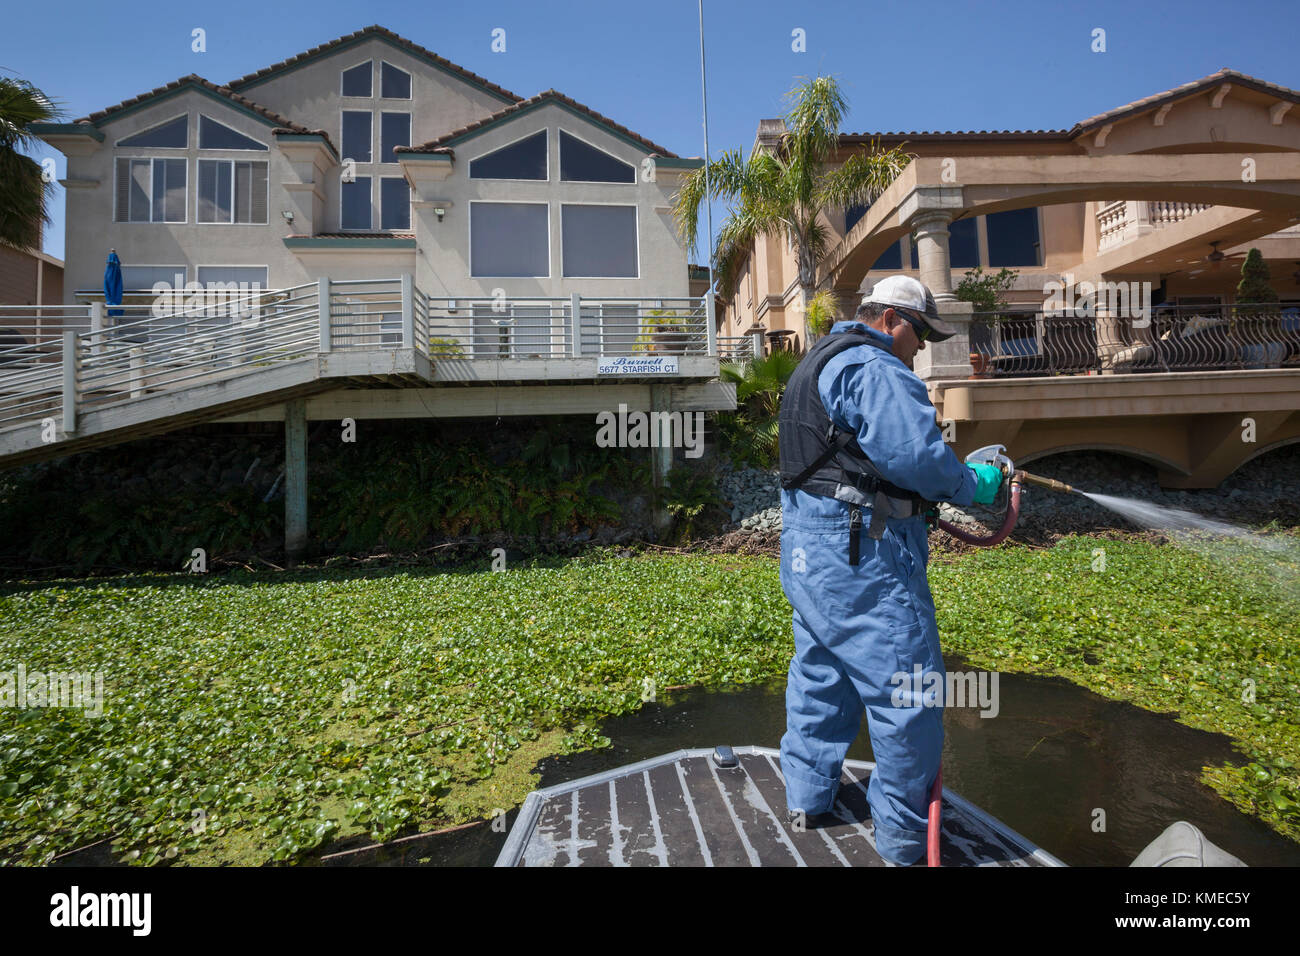 L'uomo la spruzzatura di giacinto di acqua con sostanze chimiche, Stockton, California, Stati Uniti d'America Foto Stock